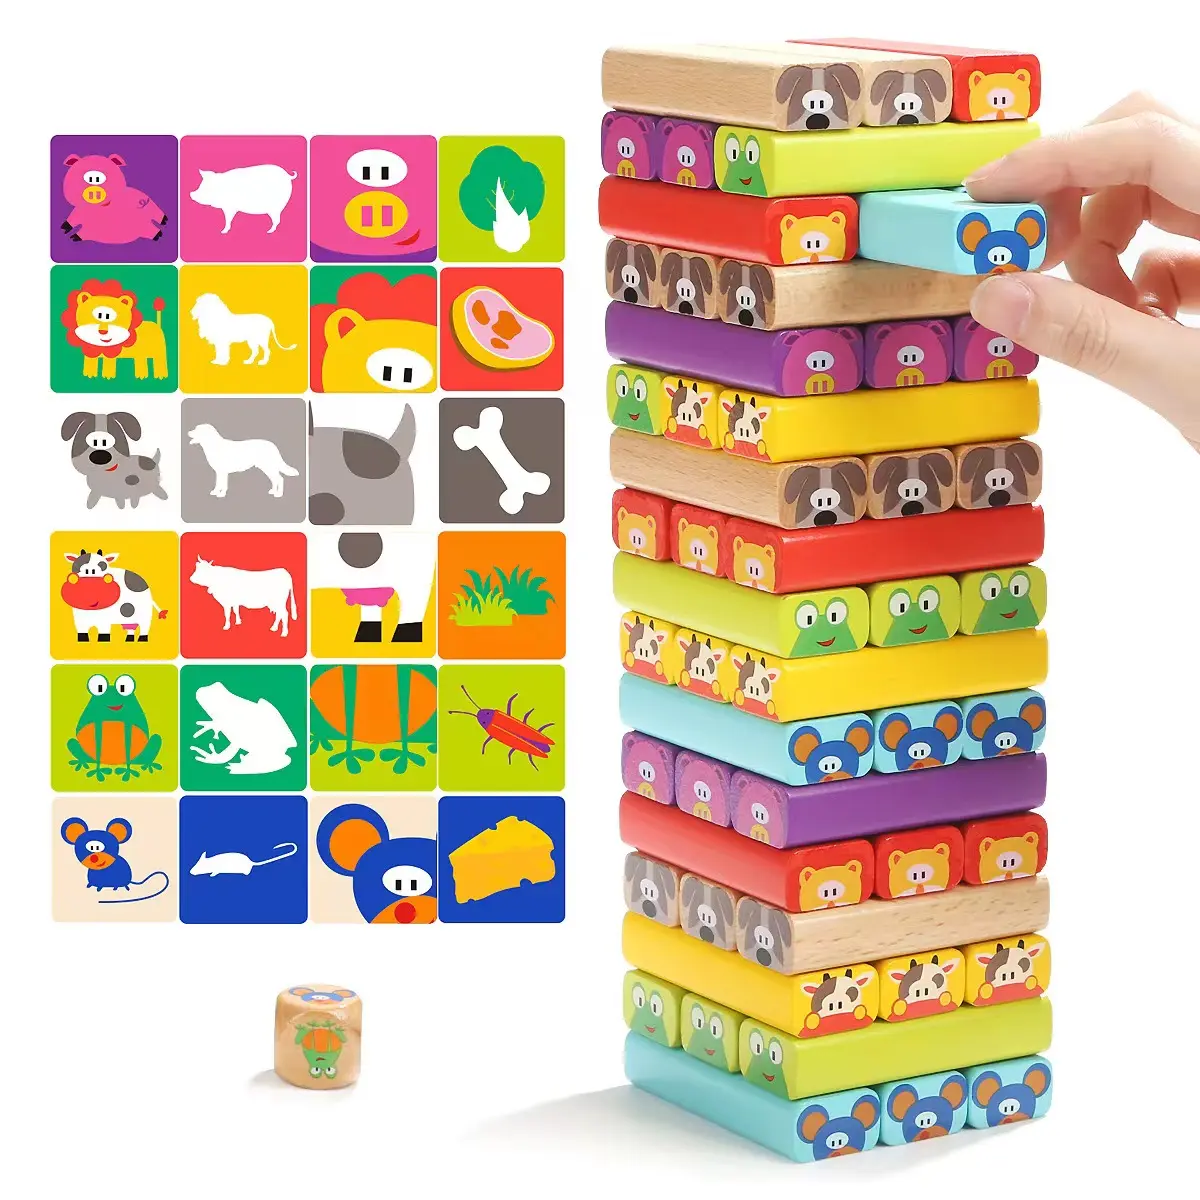 ألعاب تركيب ألواح خشبية ملونة للأطفال من سن 4-8 إلى 51 قطعة